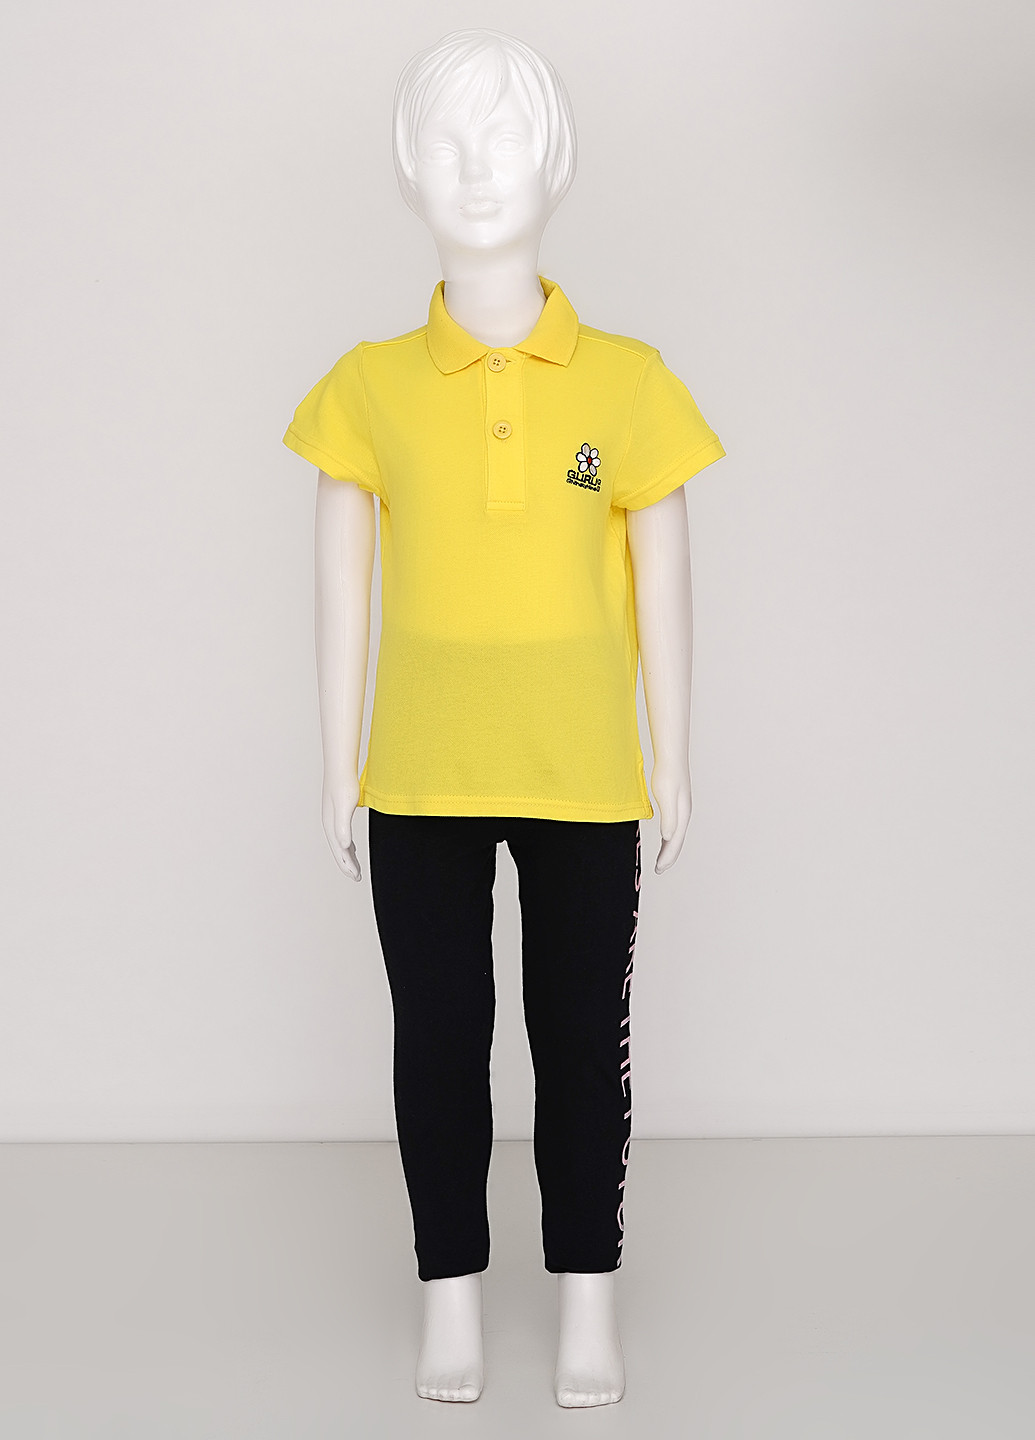 Желтая детская футболка-поло для девочки Guru с надписью